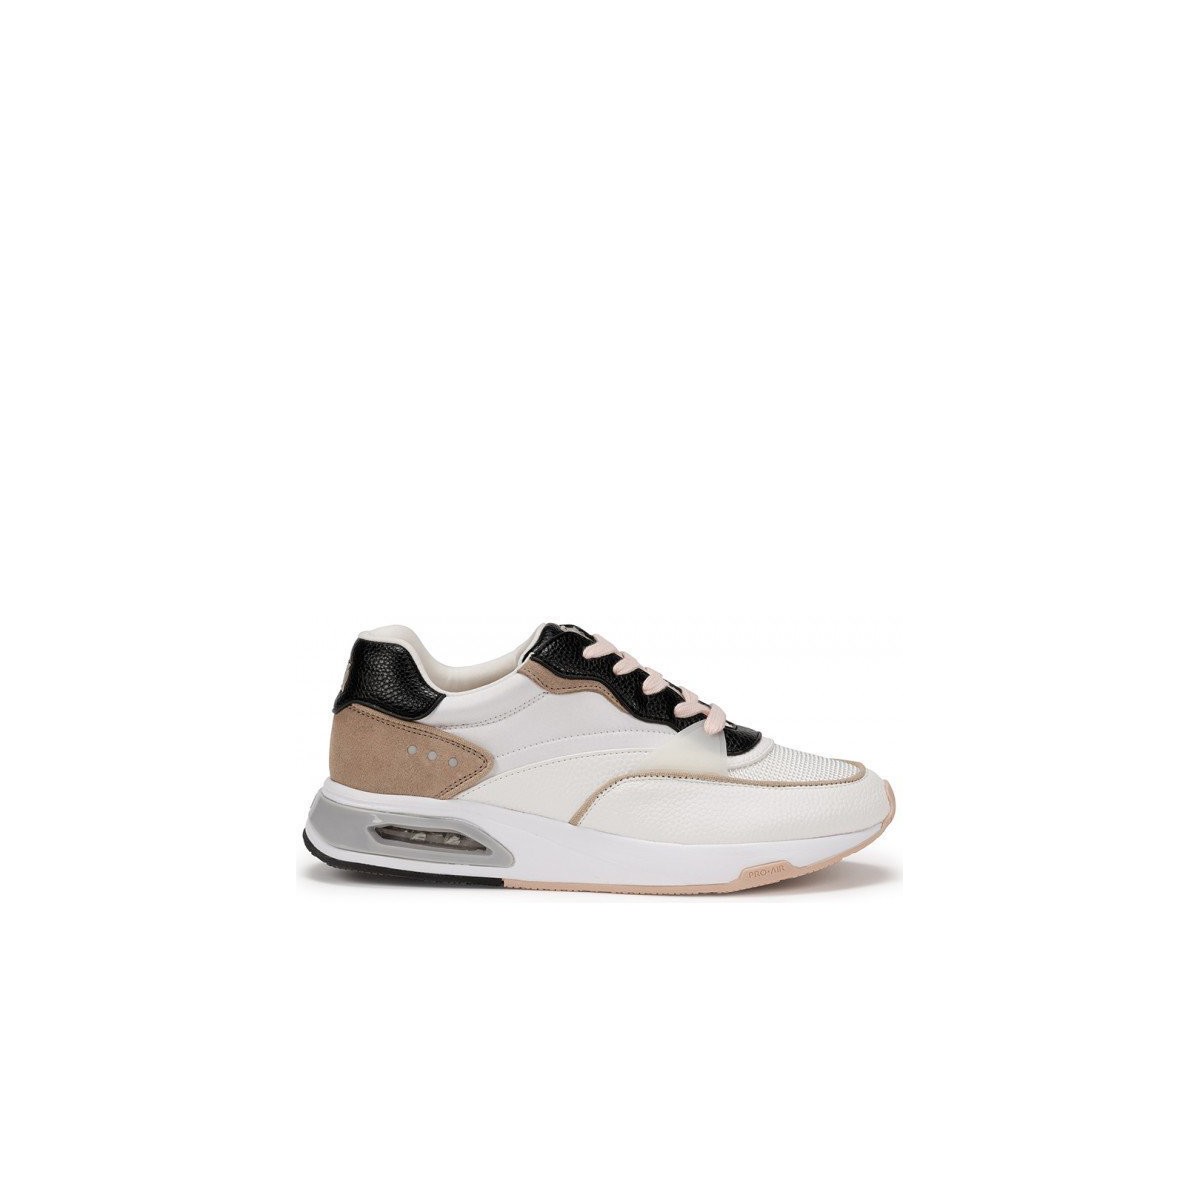 Xαμηλά Sneakers Dorking Jazz D8526 Blanco